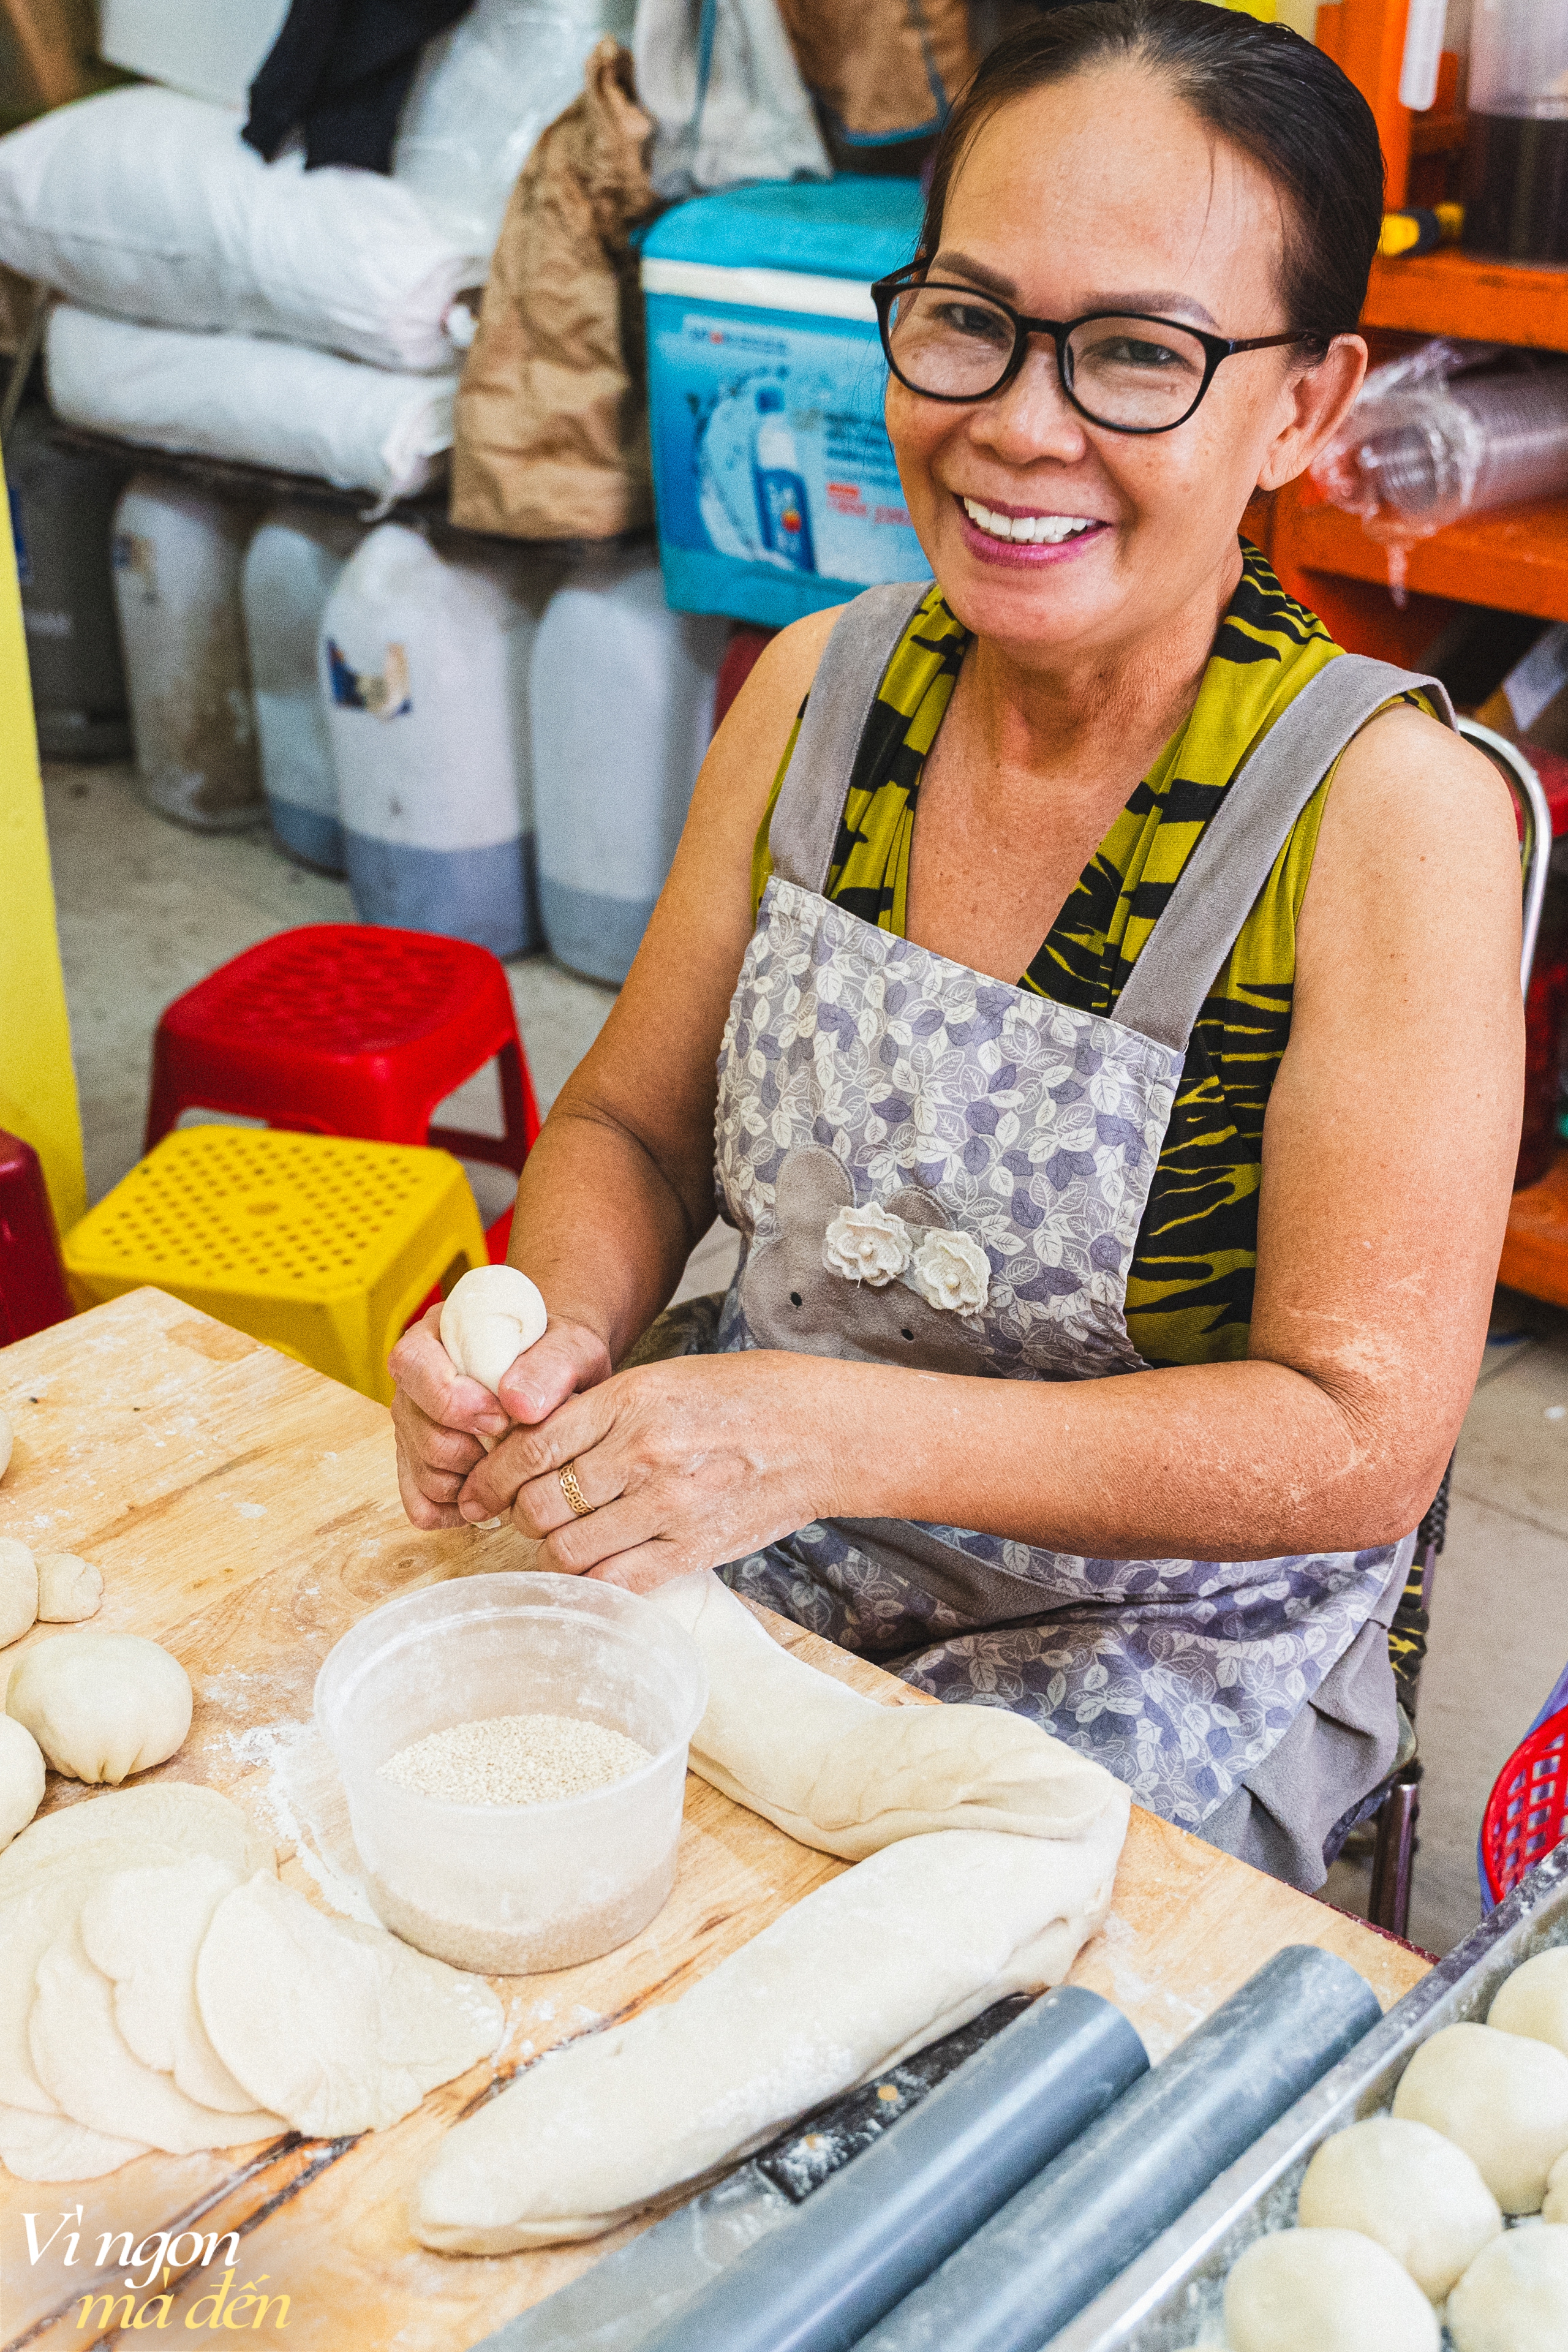 Tiệm bánh bao chiên bằng dầu dừa ngày bán gần 3.000 cái, con gái nối nghiệp làm thêm nhiều món... bắt trend - Ảnh 4.